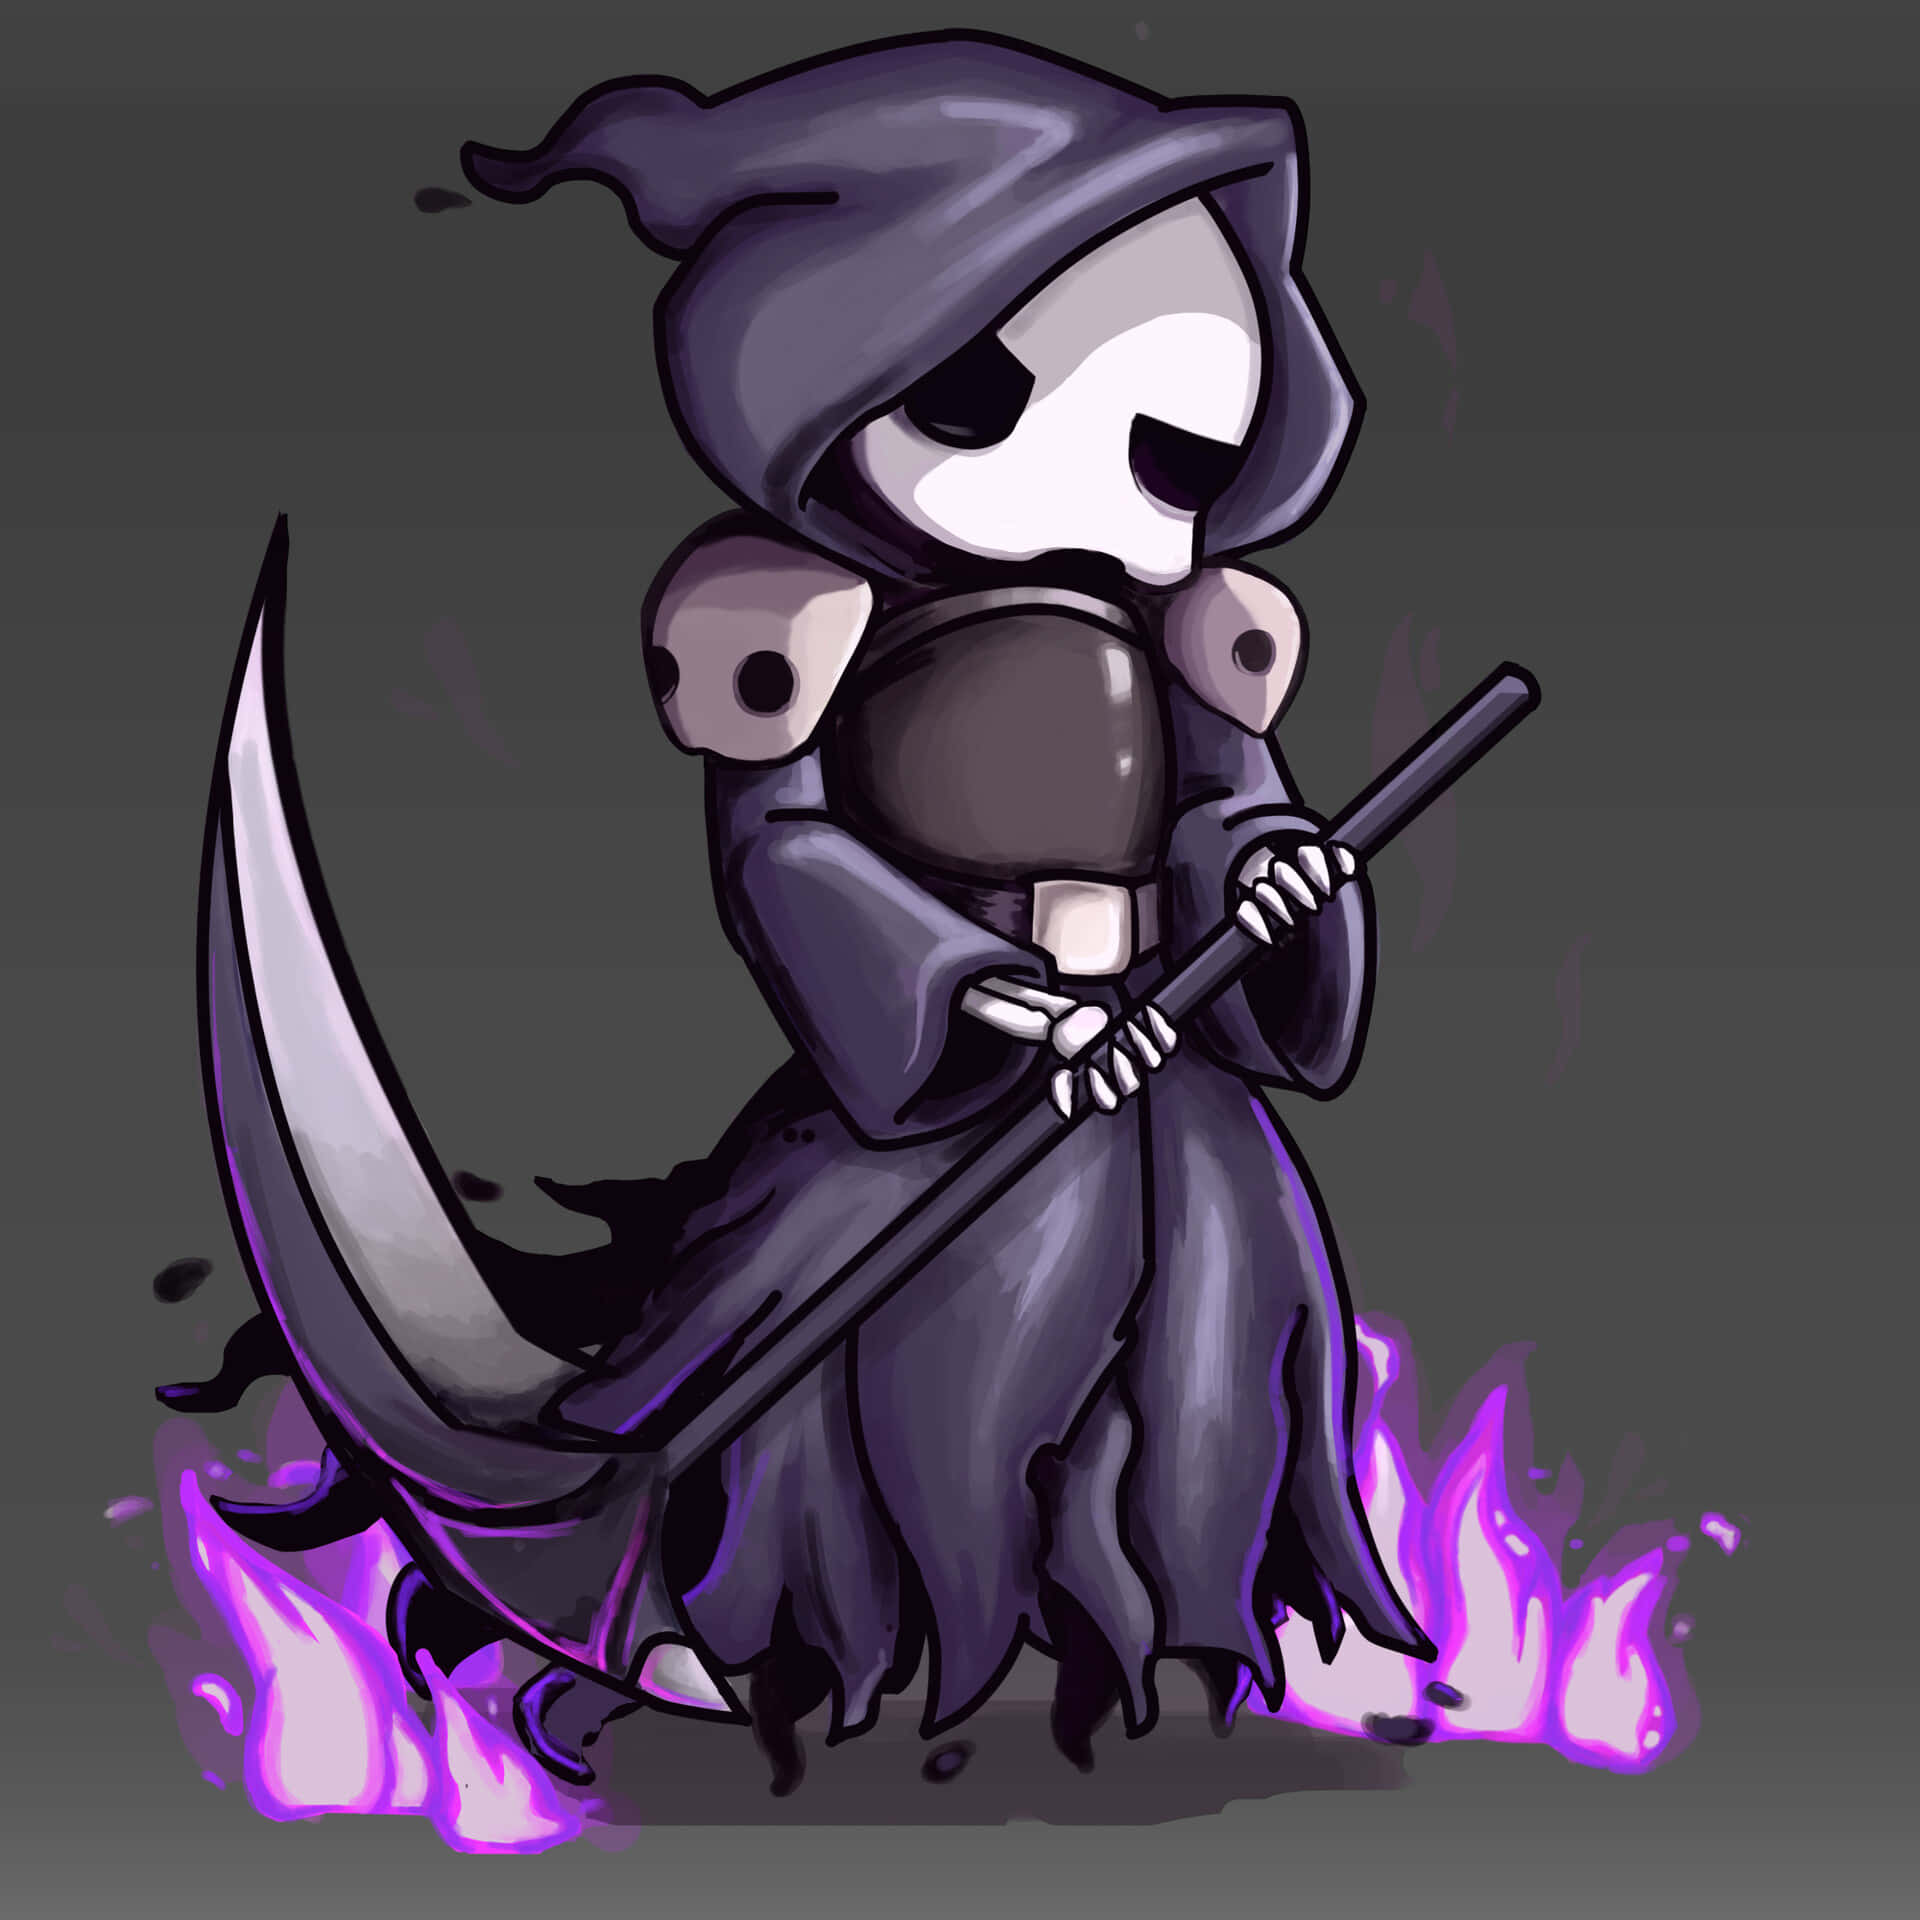 Grim Reaper Holding Scythe Against Haunting Background